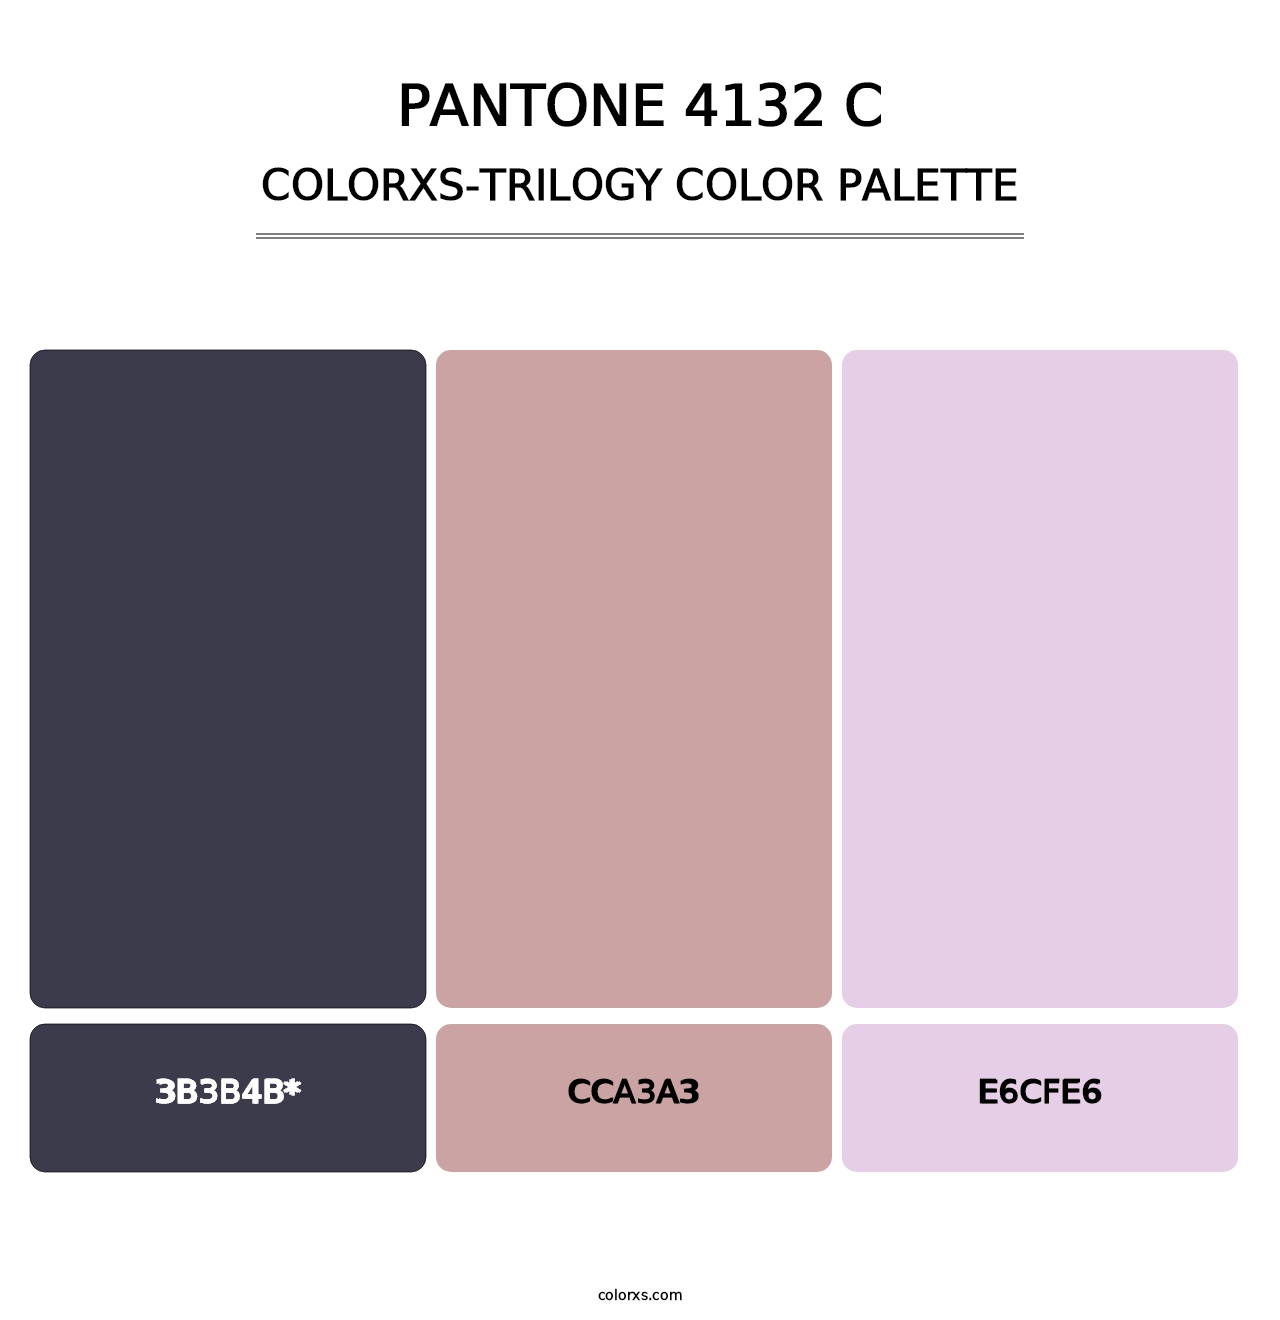 PANTONE 4132 C - Colorxs Trilogy Palette